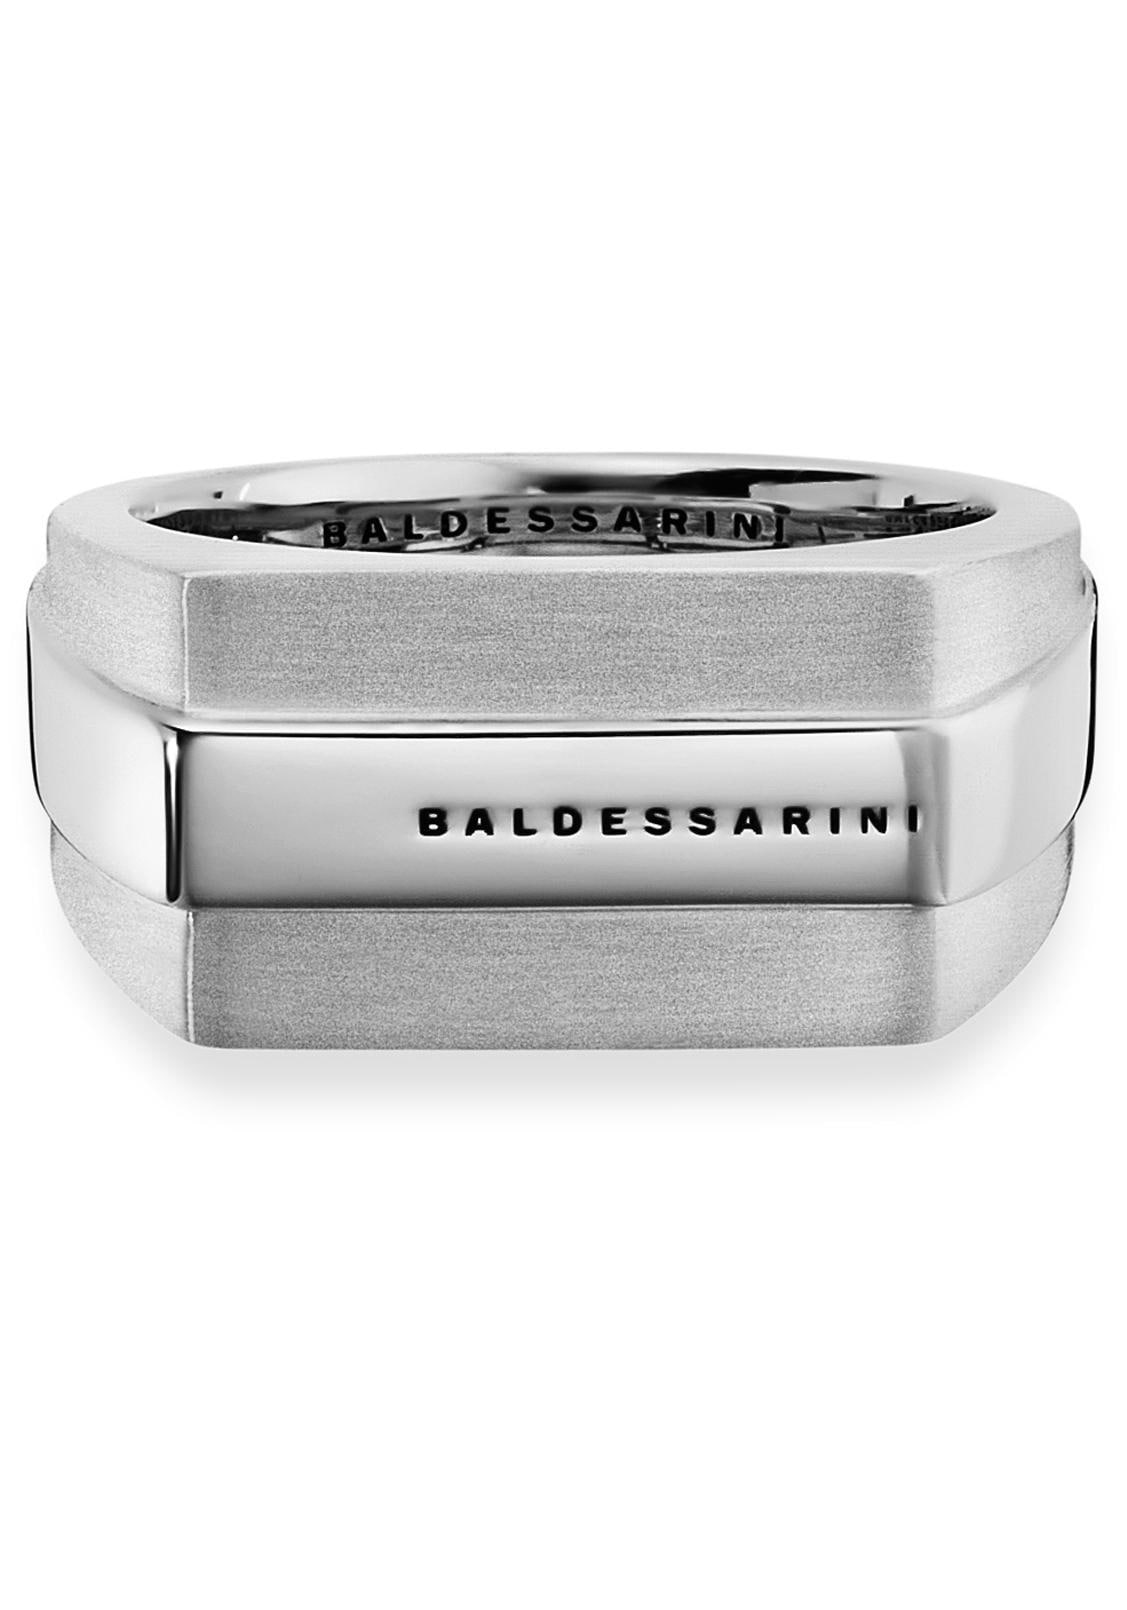 BALDESSARINI auf Silberring Rechnung »Y2136R/90/00/62« kaufen